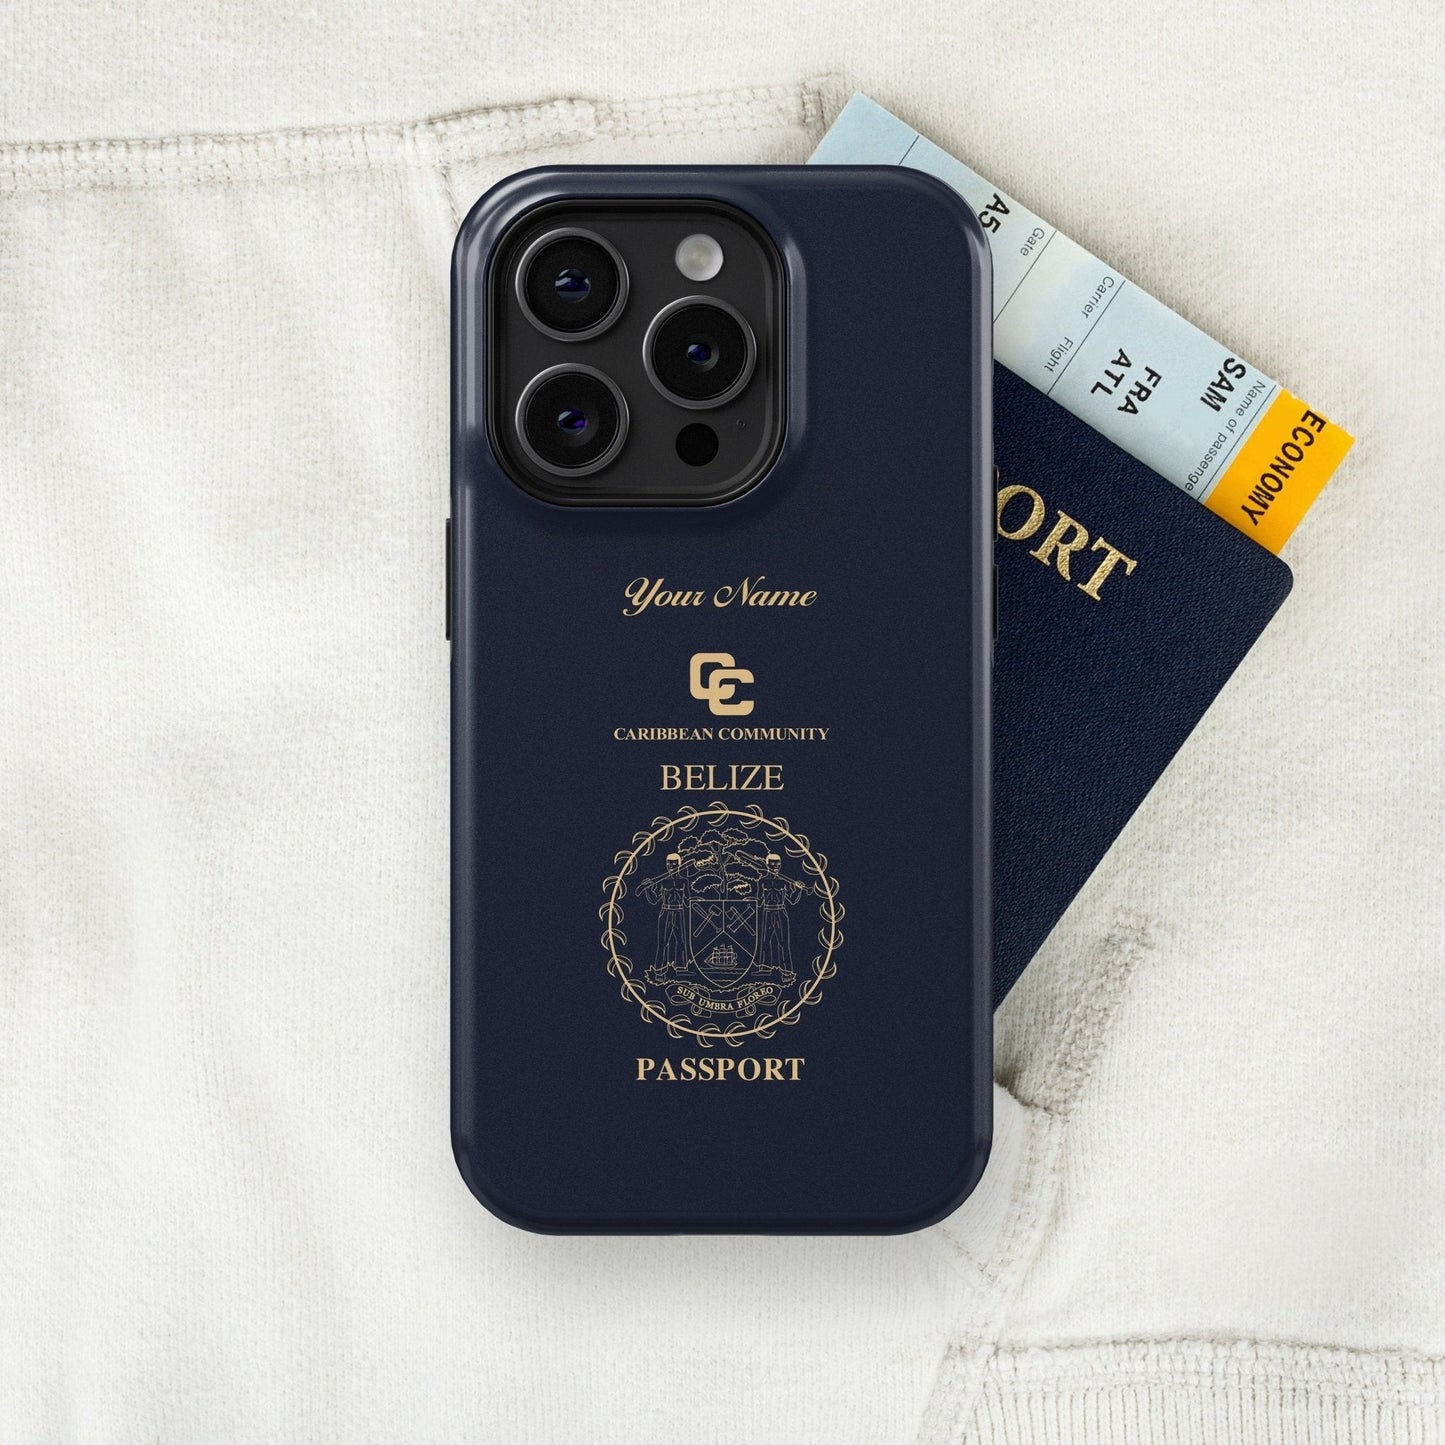 Belize Passport - iPhone Case Tough Case